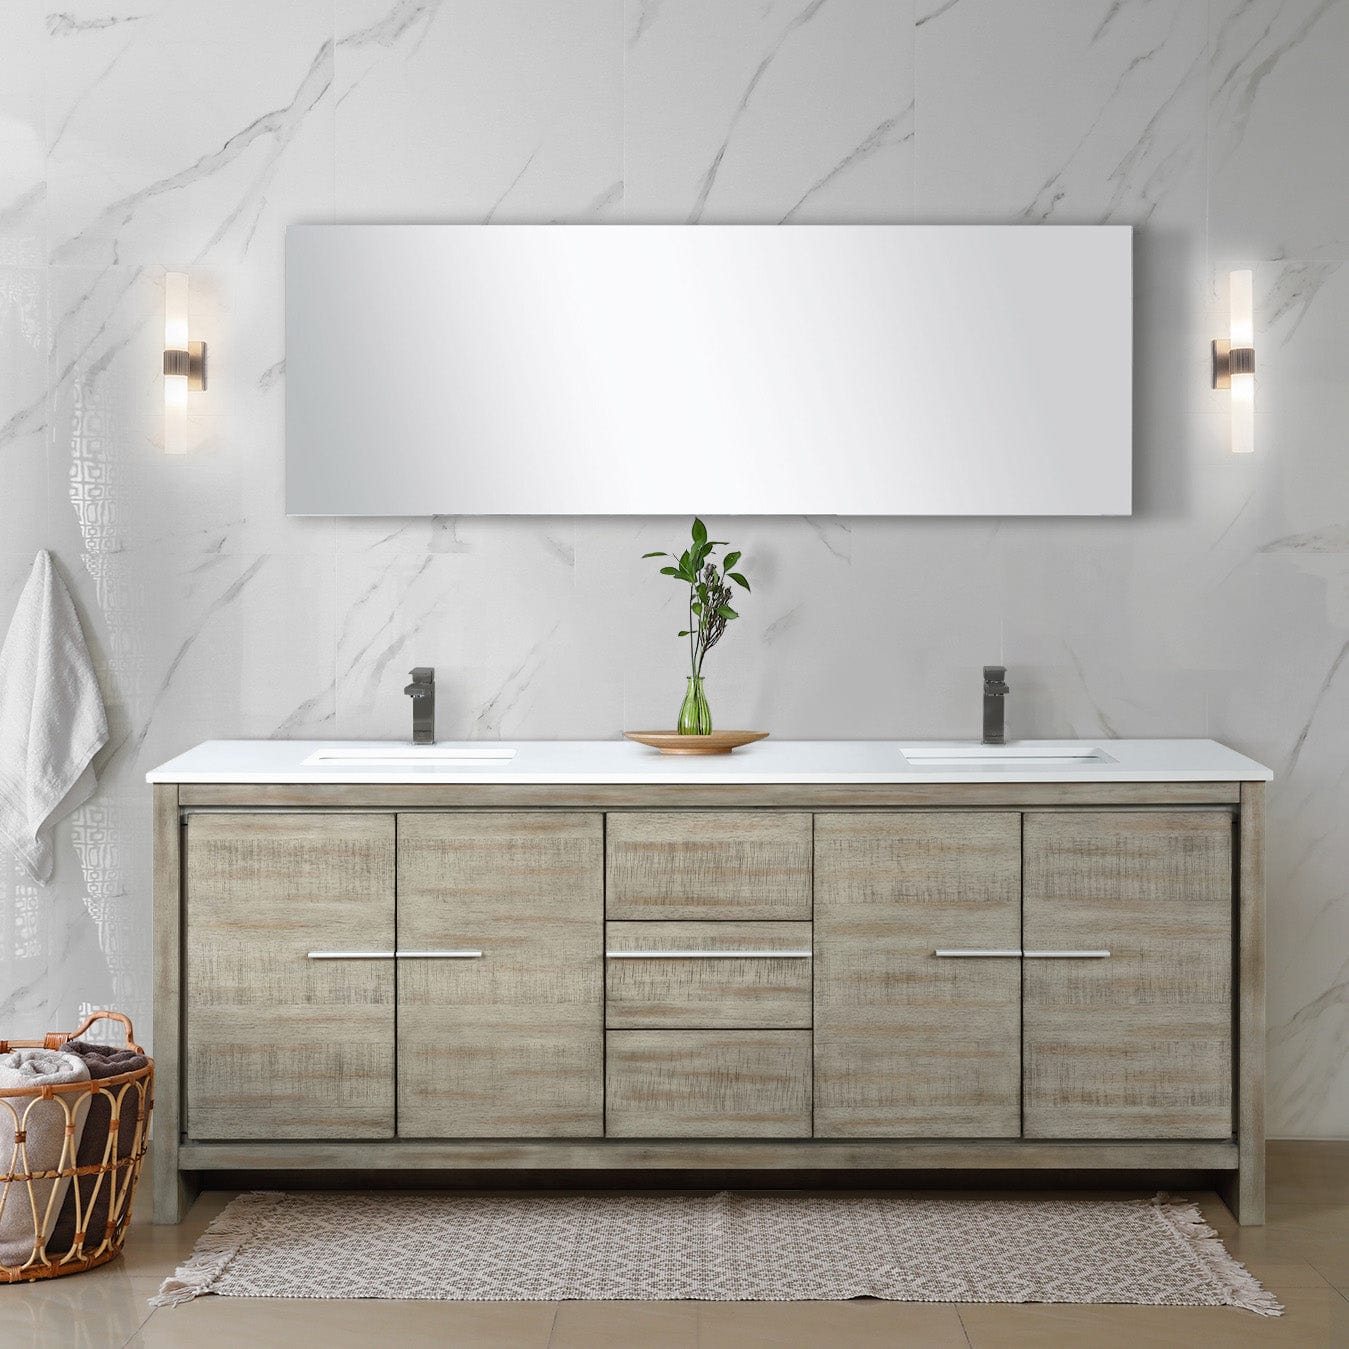 Lexora Bathroom Vanity Cultured Marble / Gun Metal Faucet / No Mirror Lafarre 80" Rustic Acacia Double Bathroom Vanity